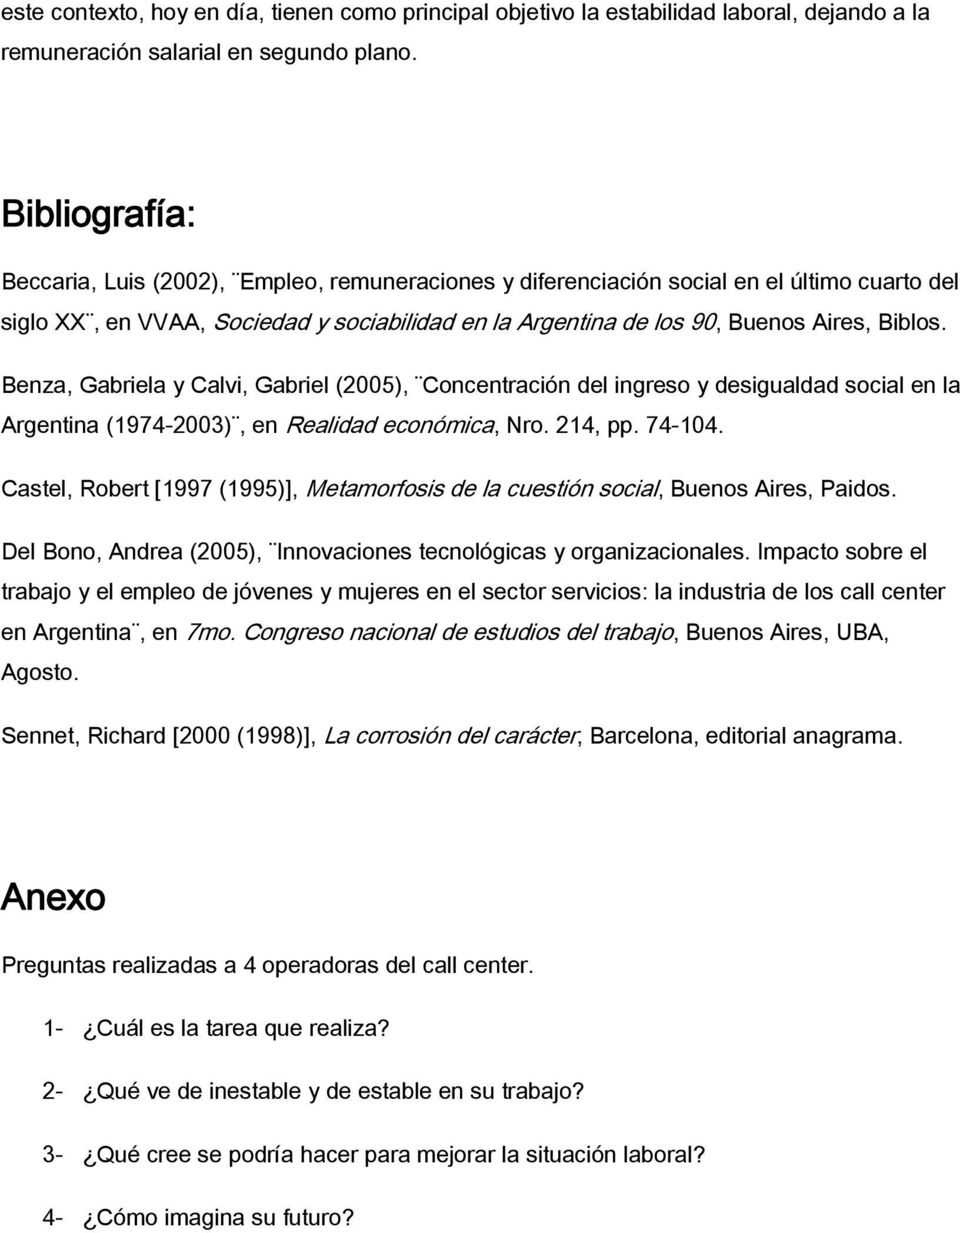 Benza, Gabriela y Calvi, Gabriel (2005), Concentración del ingreso y desigualdad social en la Argentina (1974-2003), en Realidad económica, Nro. 214, pp. 74-104.